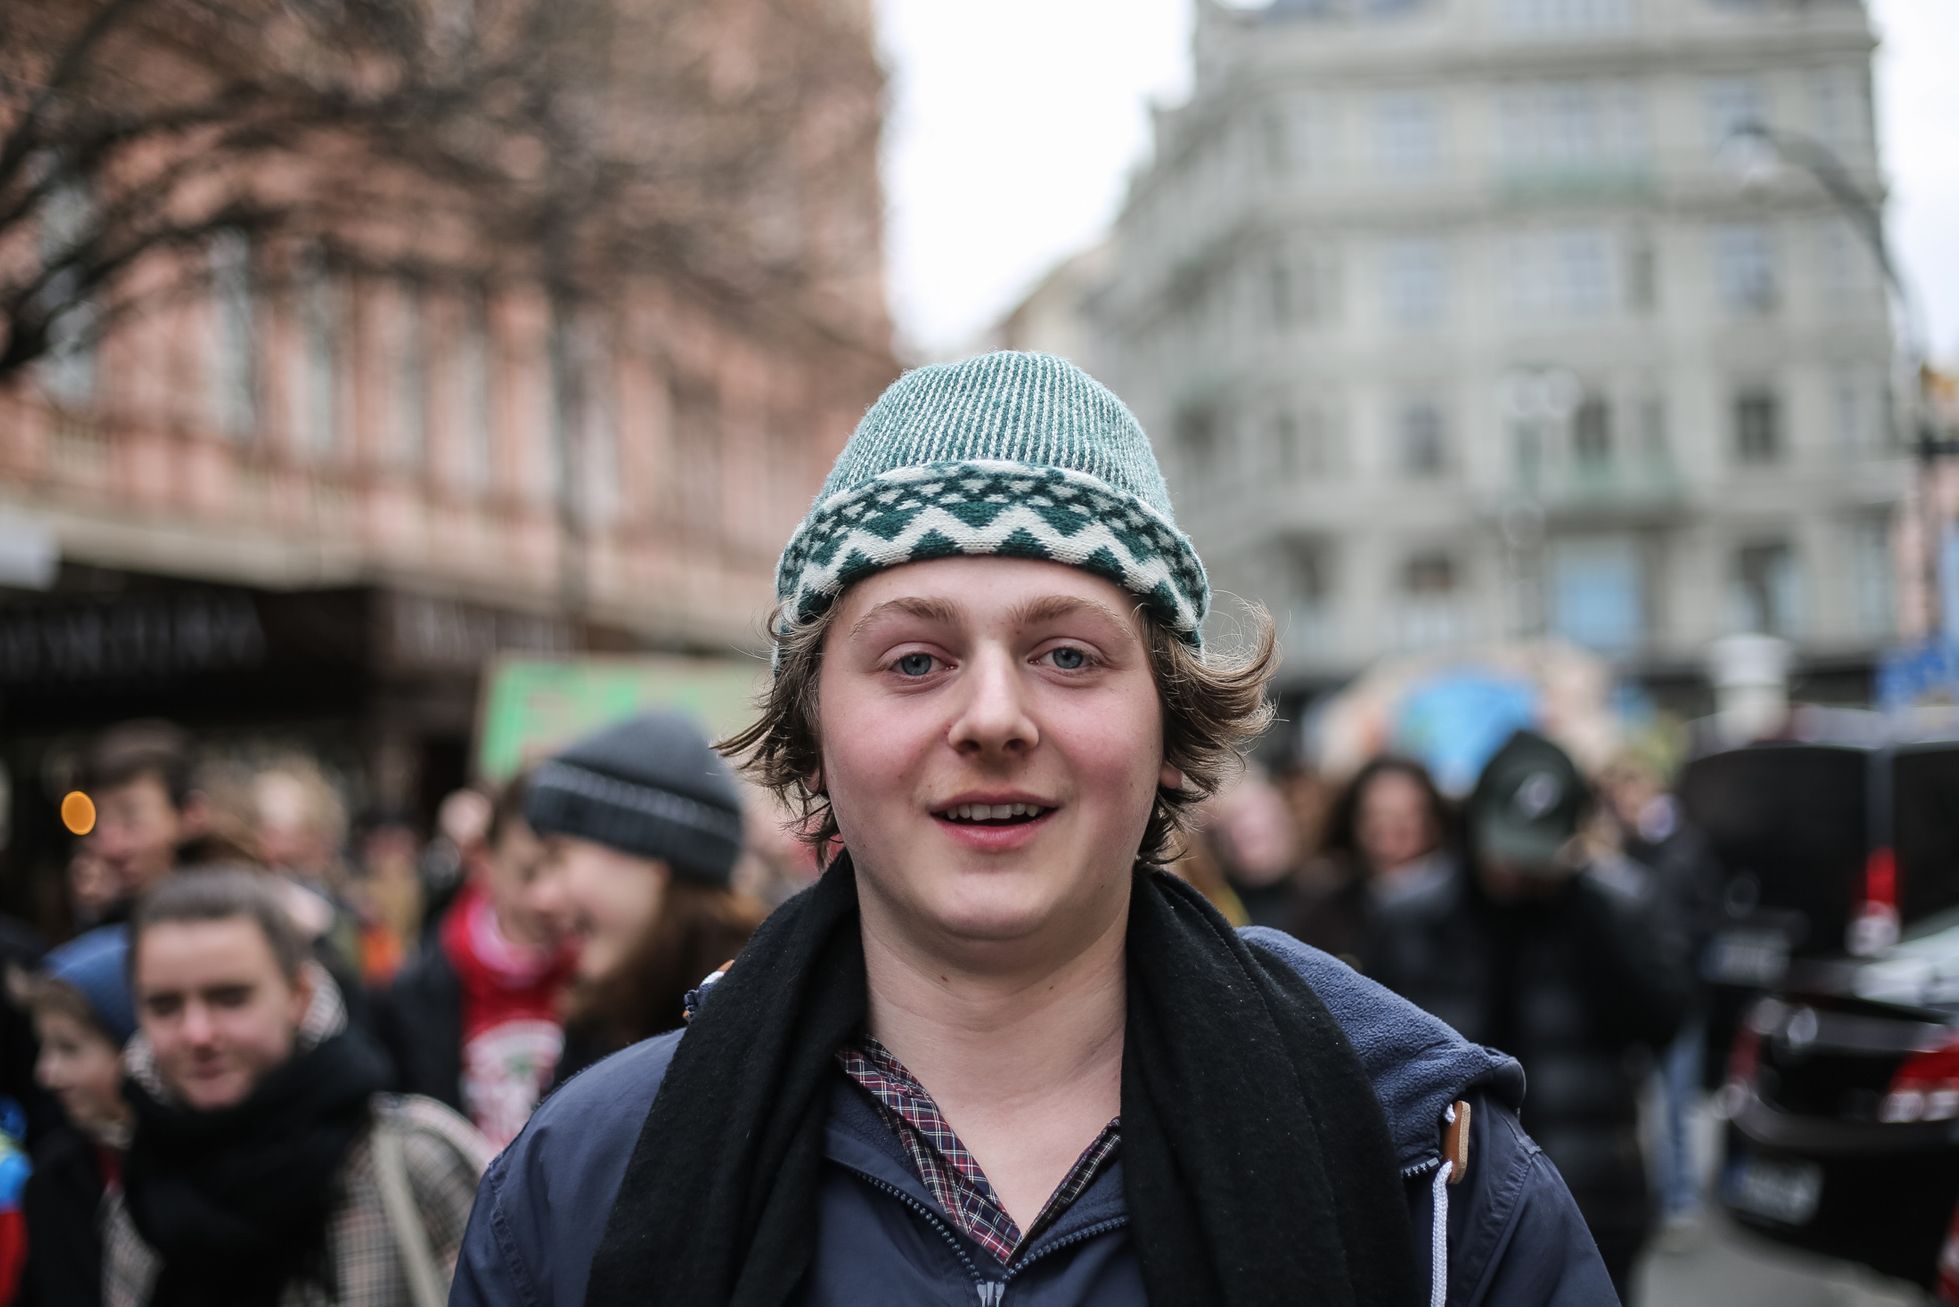 Fridays for Future Praha - první studentská stávka / protest za změnu postoje v boji proti změně klimatu, 15. 3. 2019